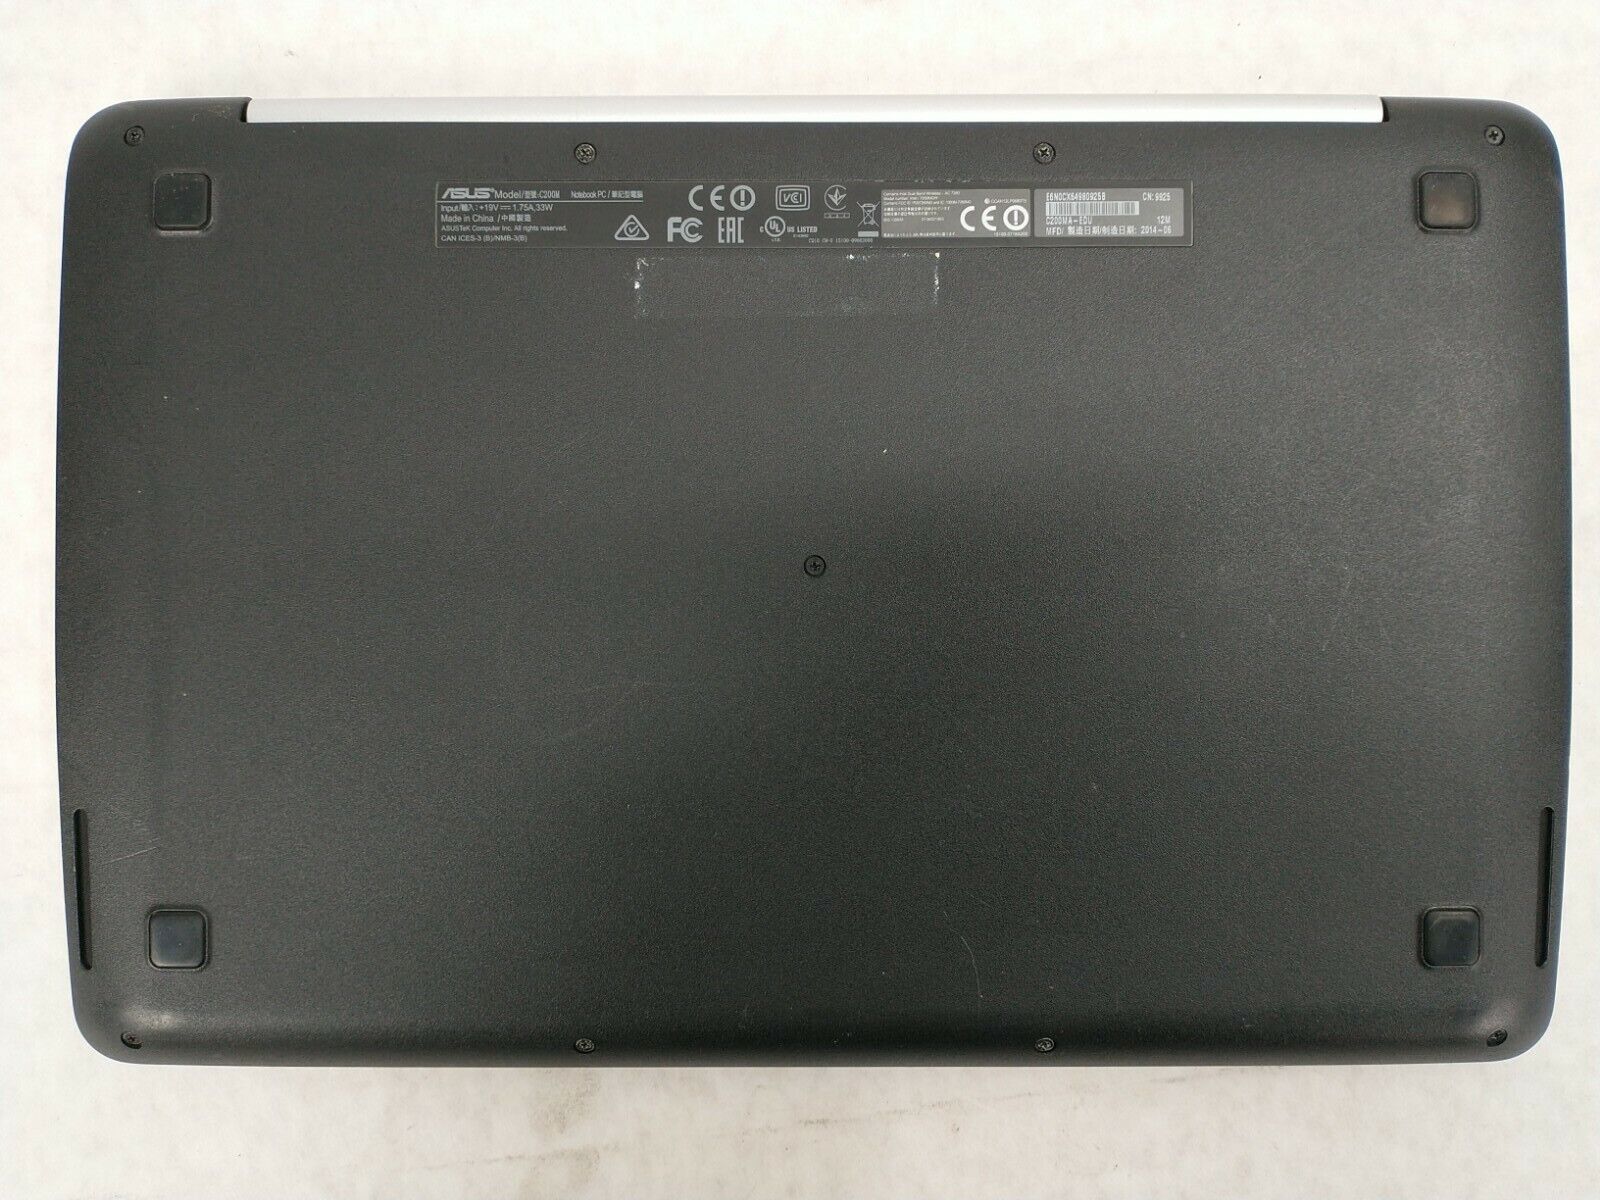 Asus Chromebook C200MA-EDU Laptop Computer Chrome OS 11.6" 2GB 16GB Webcam